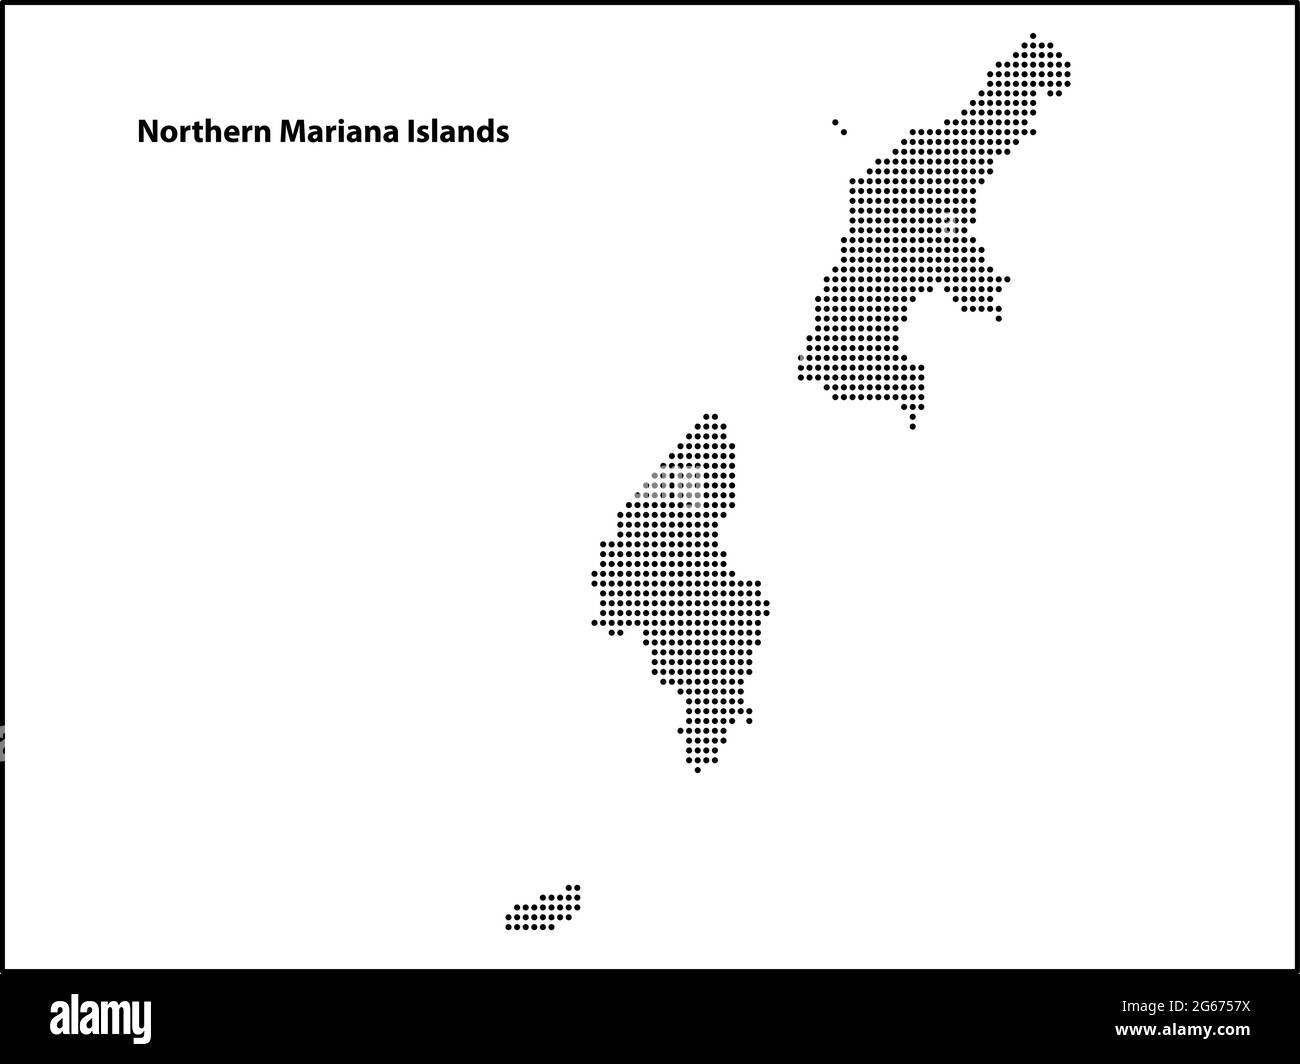 Mappa vettoriale a mezzitoni punteggiata del paese delle Isole Marianne Settentrionali per il tuo disegno, concetto di illustrazione di viaggio. Illustrazione Vettoriale